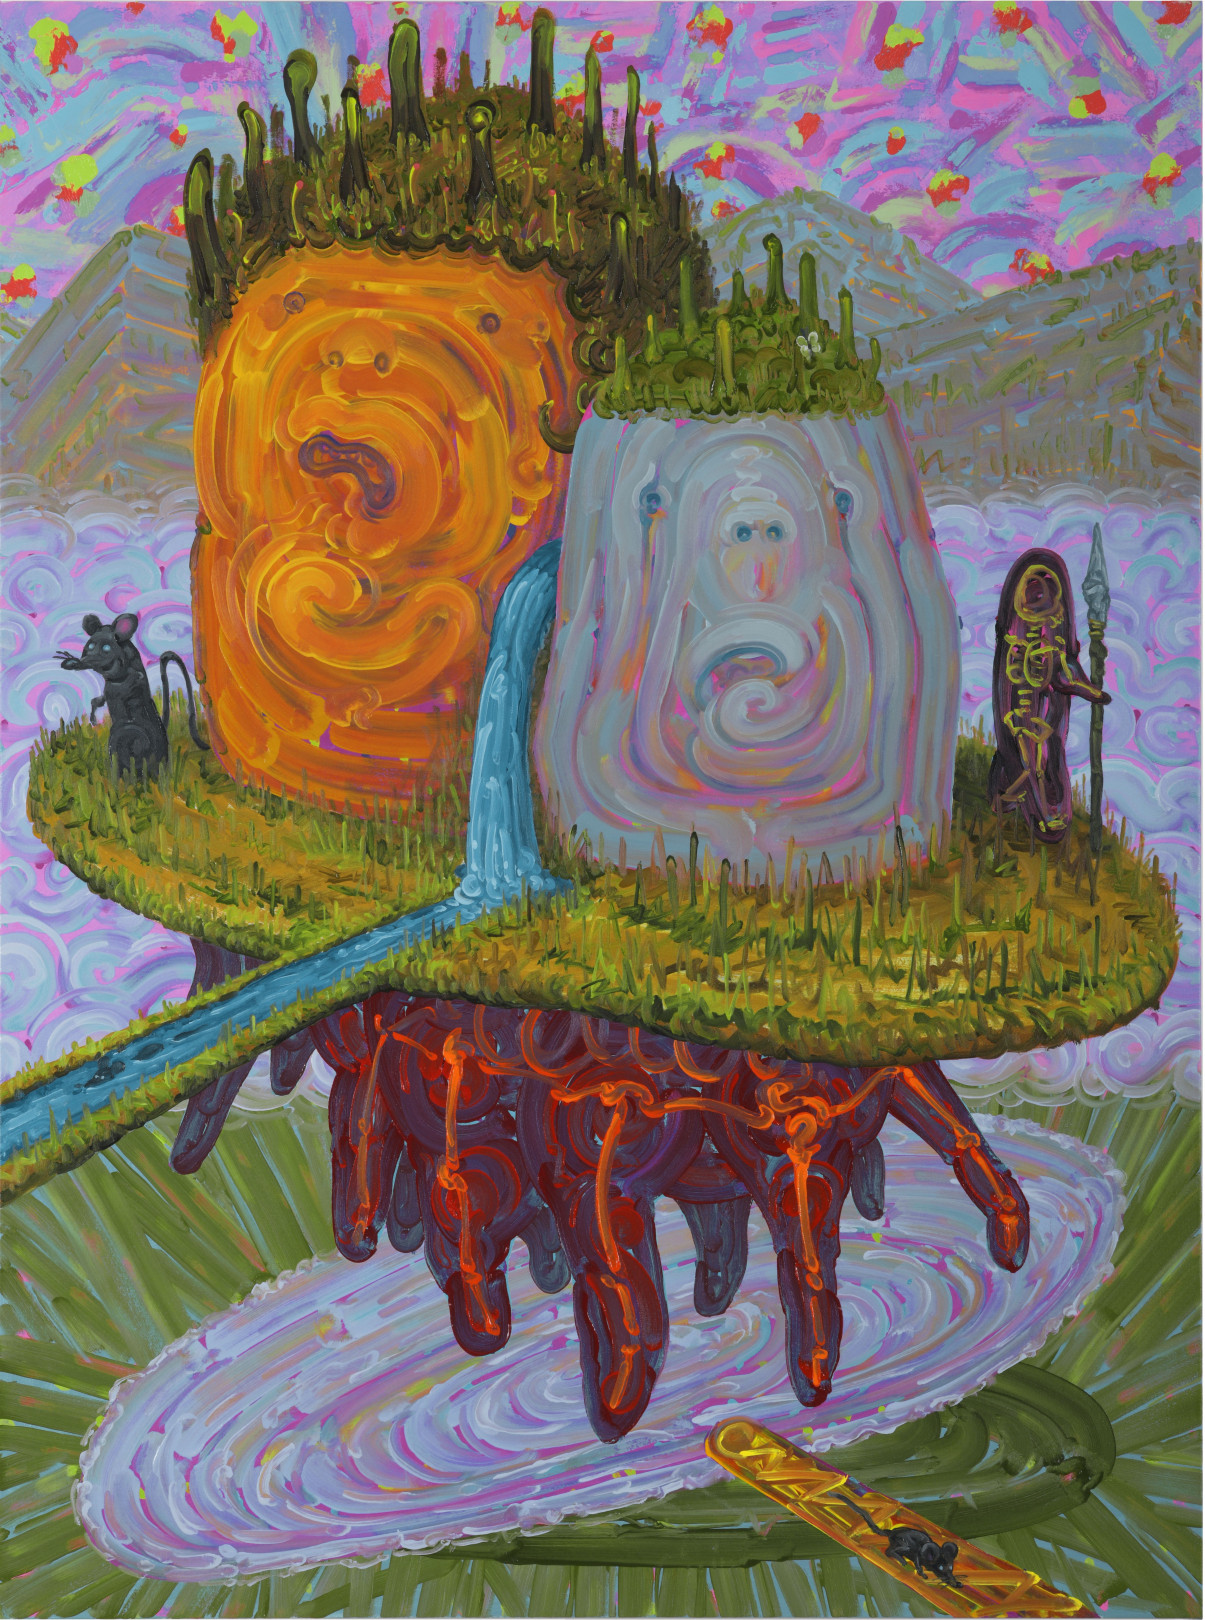 「不機嫌なヤマビコ、キレ気味のヤマビコ、それはA子のココロ模様」 Oil on canvas 1303x970mm